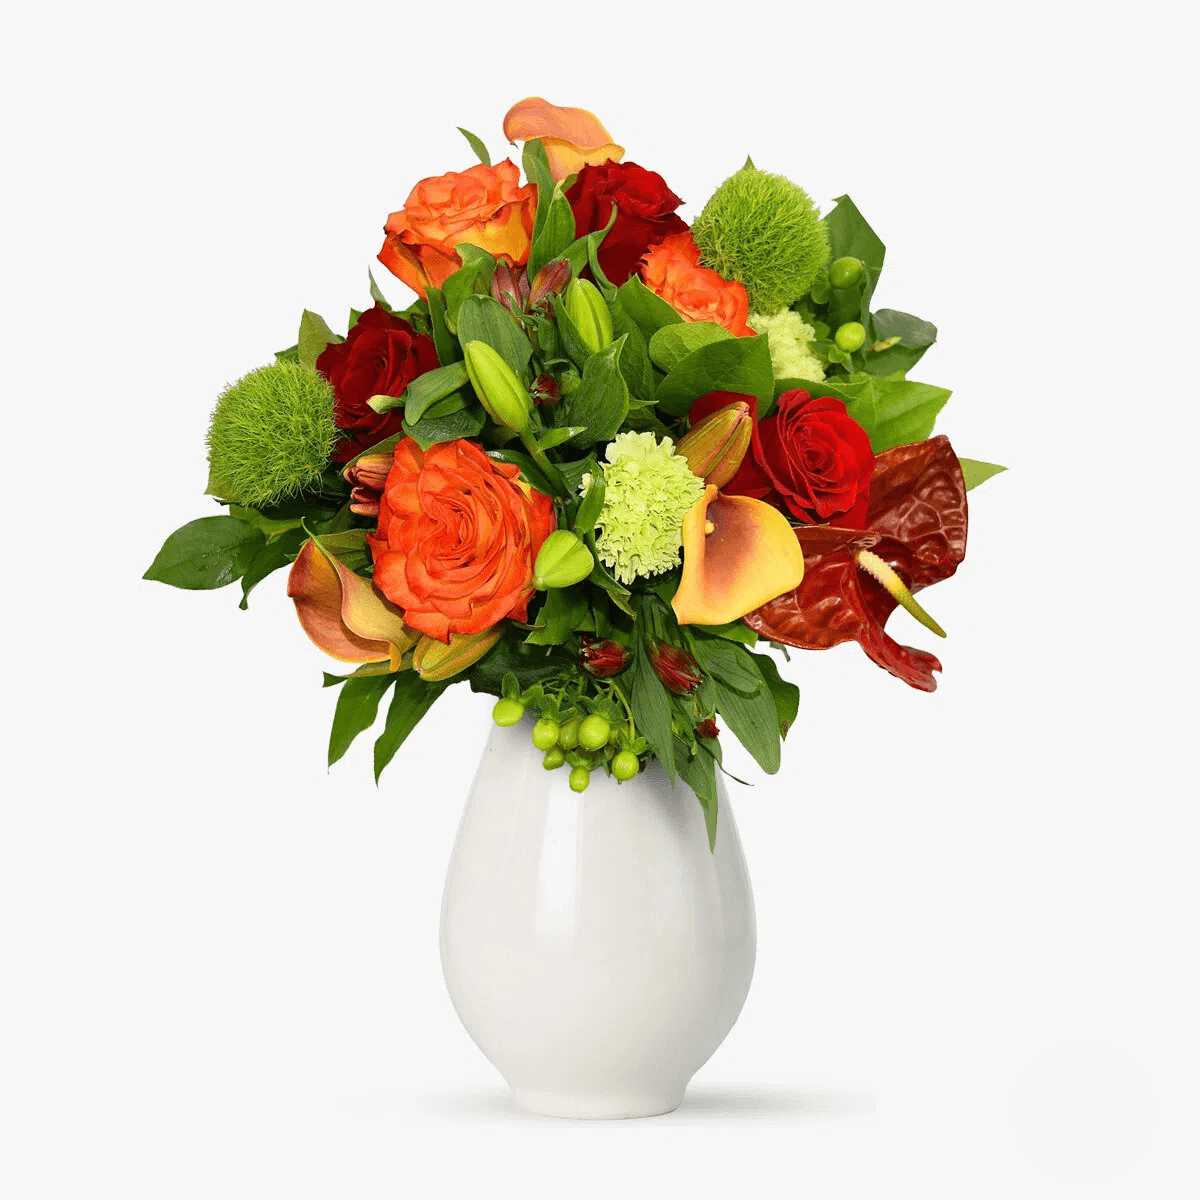 Buchet de flori cu Anthurium rosii, Cala portocalii, Crin asiatic portocalii Culori intense